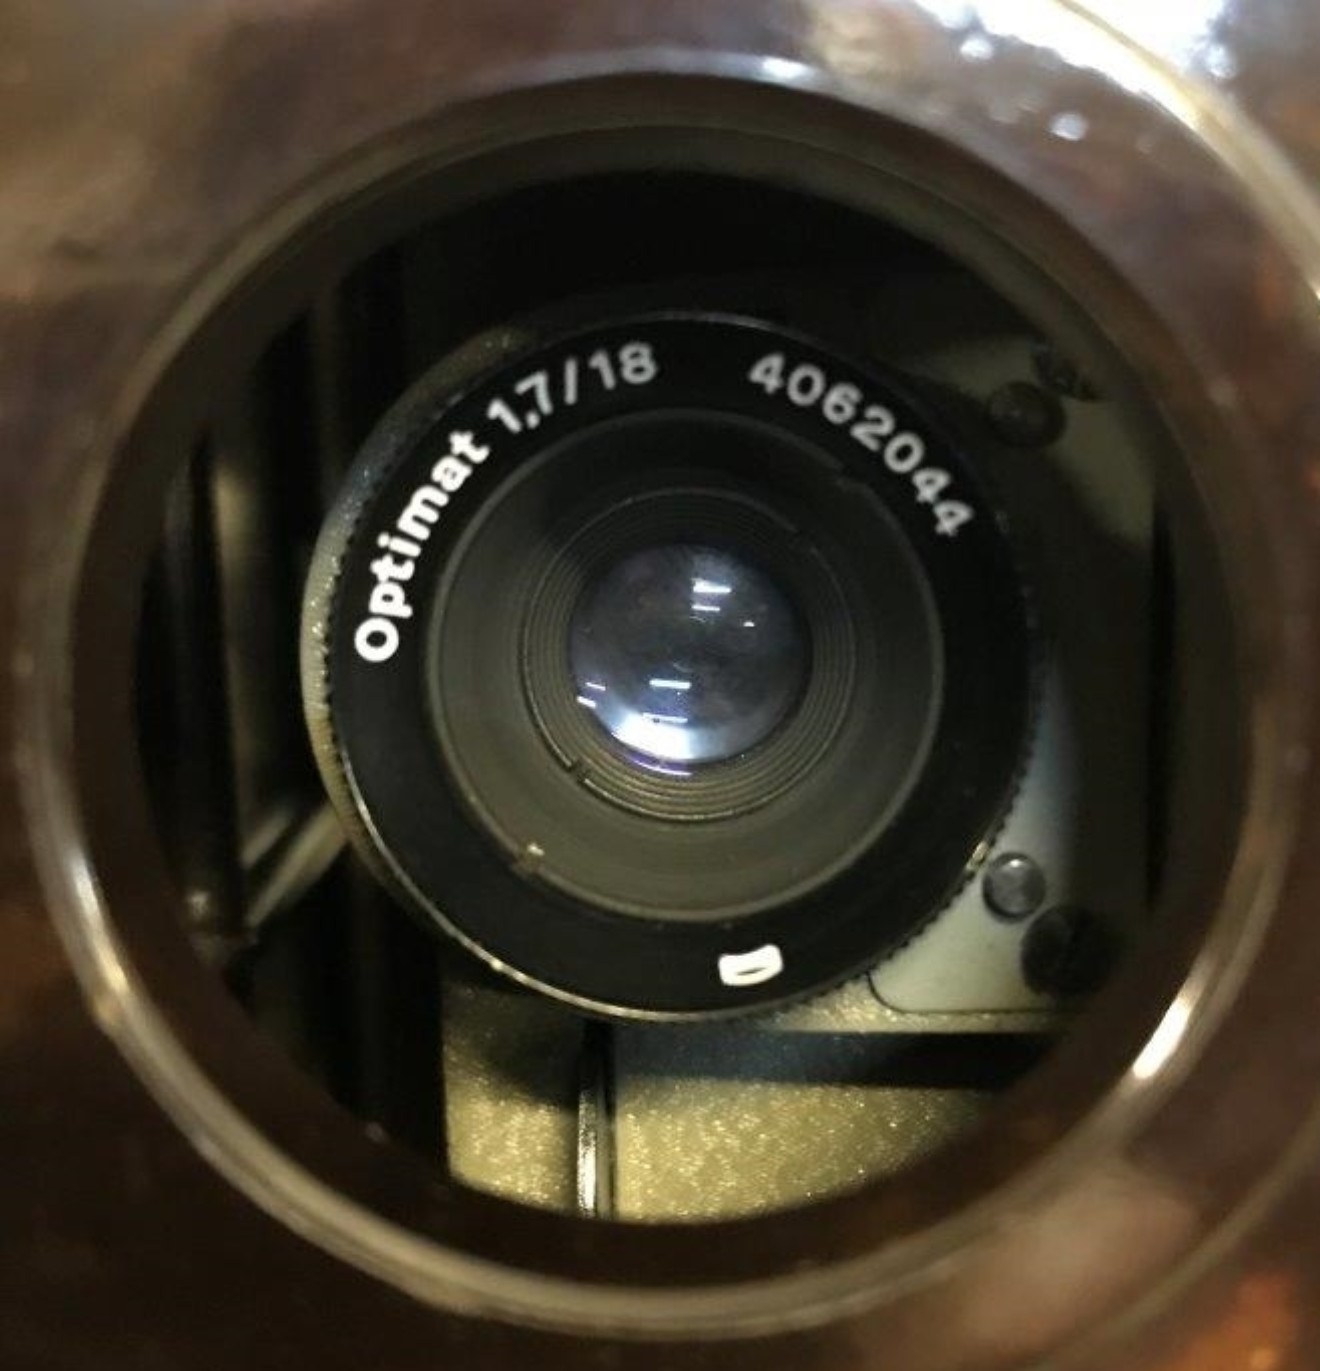 VEB Zeiss Ikon 8mm Film Projector Model P8 in Brown Bakelite Case